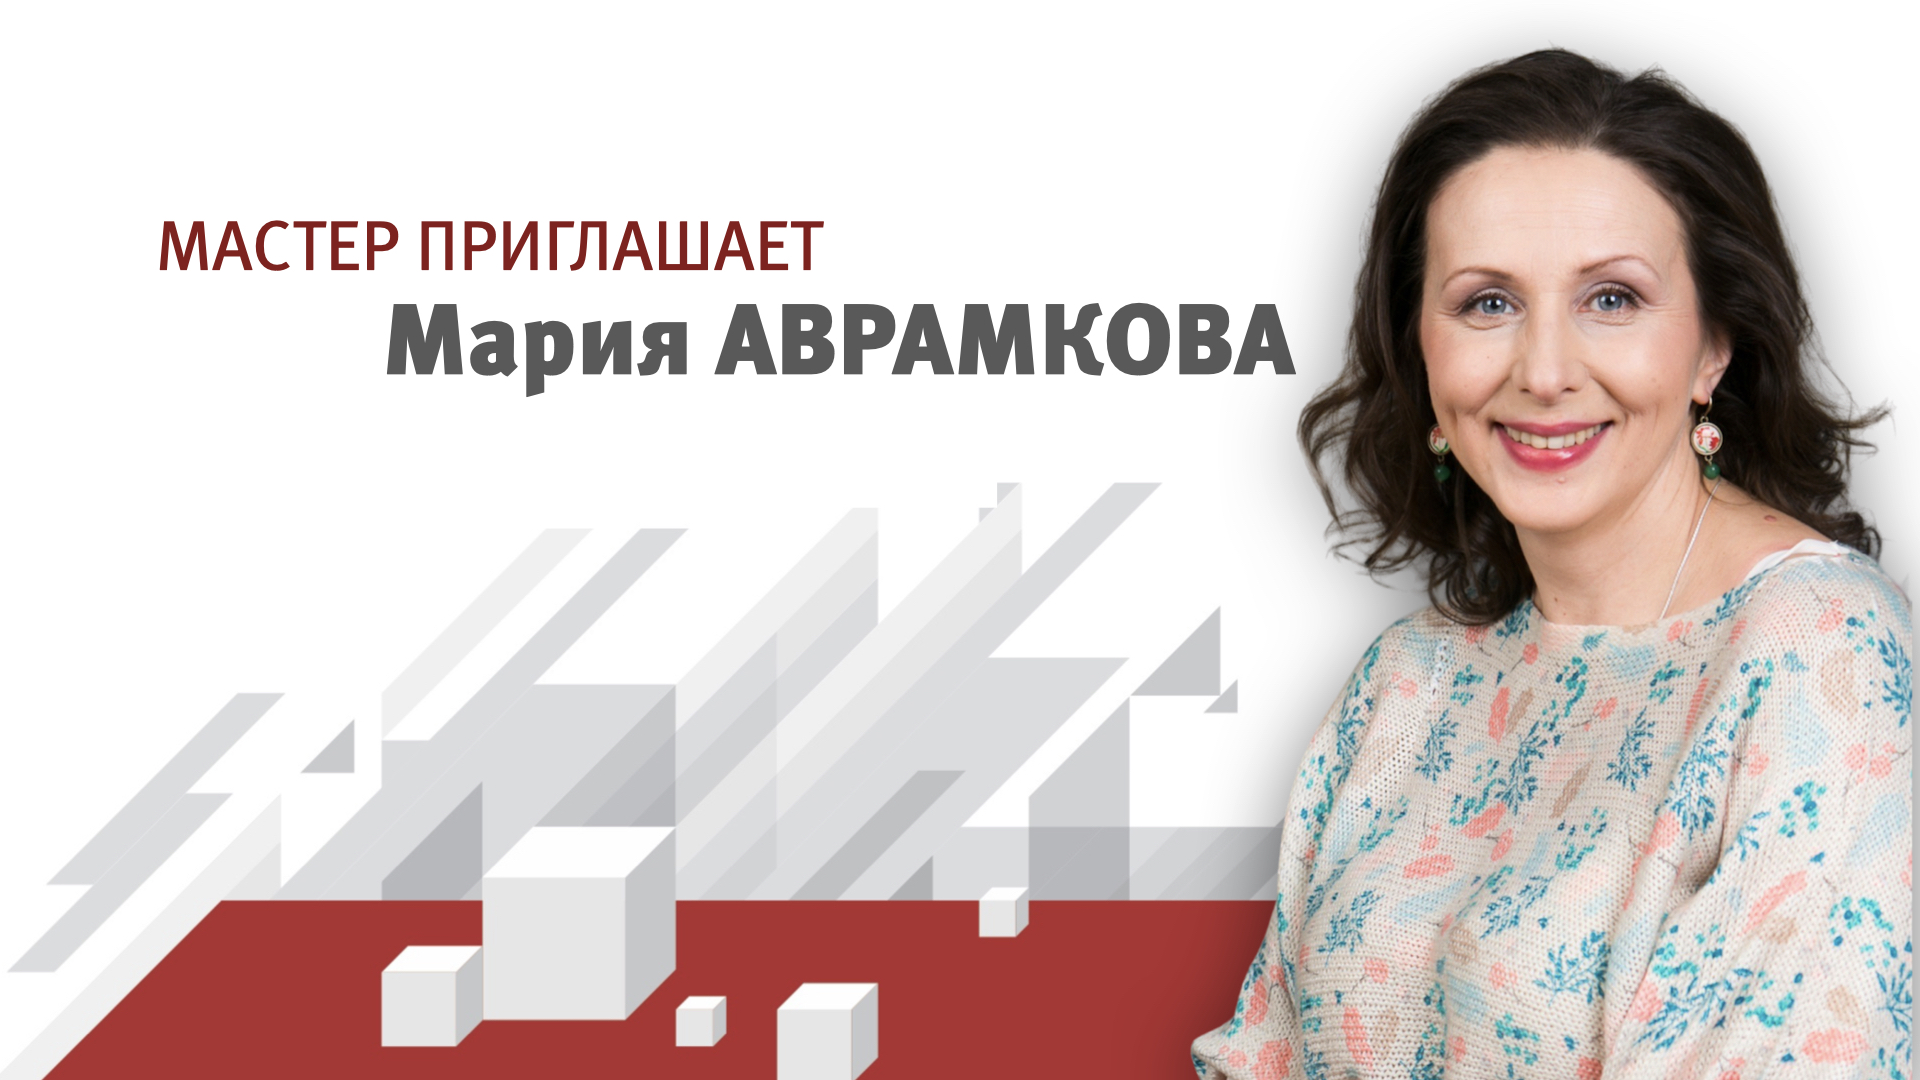 Мария Дмитриевна Аврамкова - режиссер-педагог спектакля 